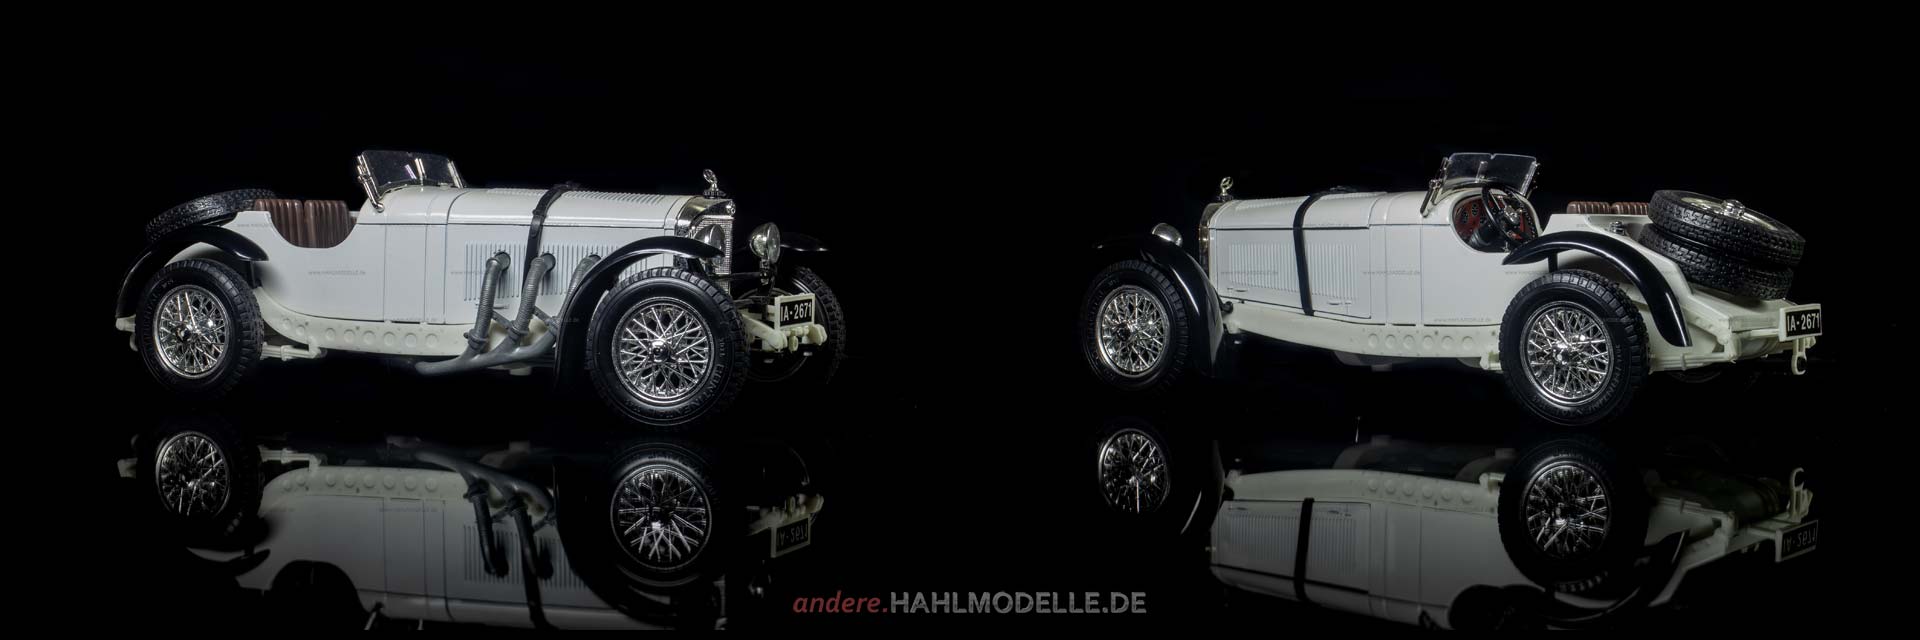 Mercedes-Benz SSKL (WS 06 RS) | Zweisitzer (Motorsport) | Bburago | www.andere.hahlmodelle.de